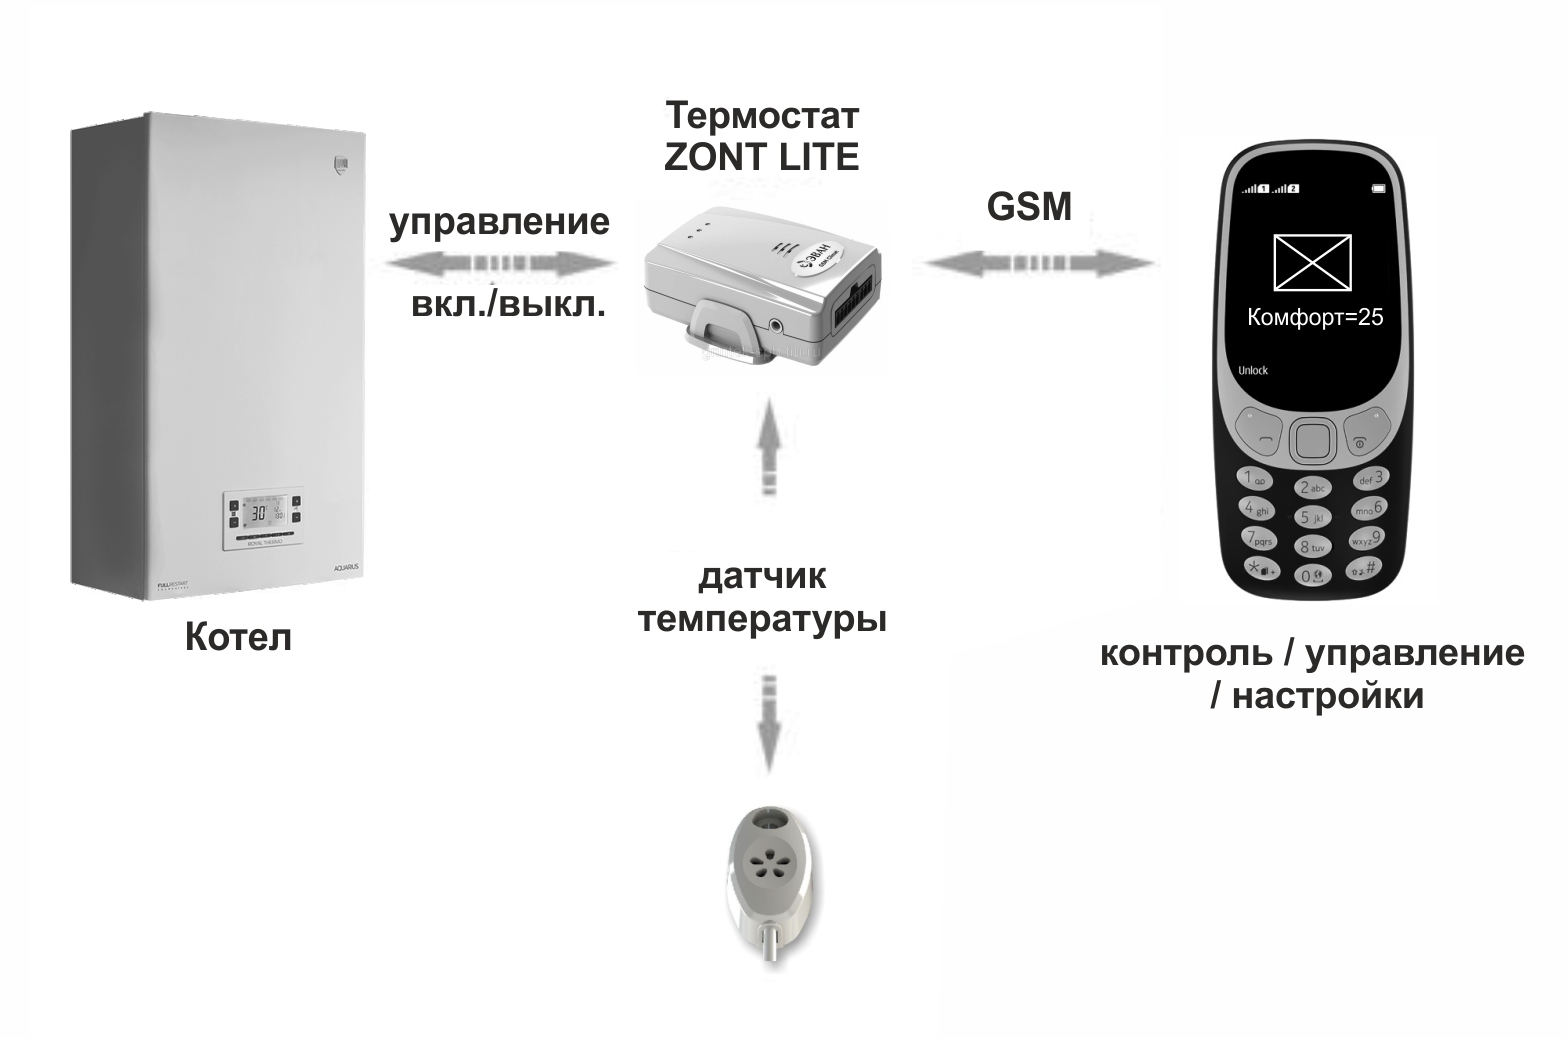 Zont wifi. Термостаты GSM Zont Lite. Термостат GSM для газовых и электрических котлов. GSM термостат Zont Lite 737. Термостат для дистанционного управления котлами Zont.